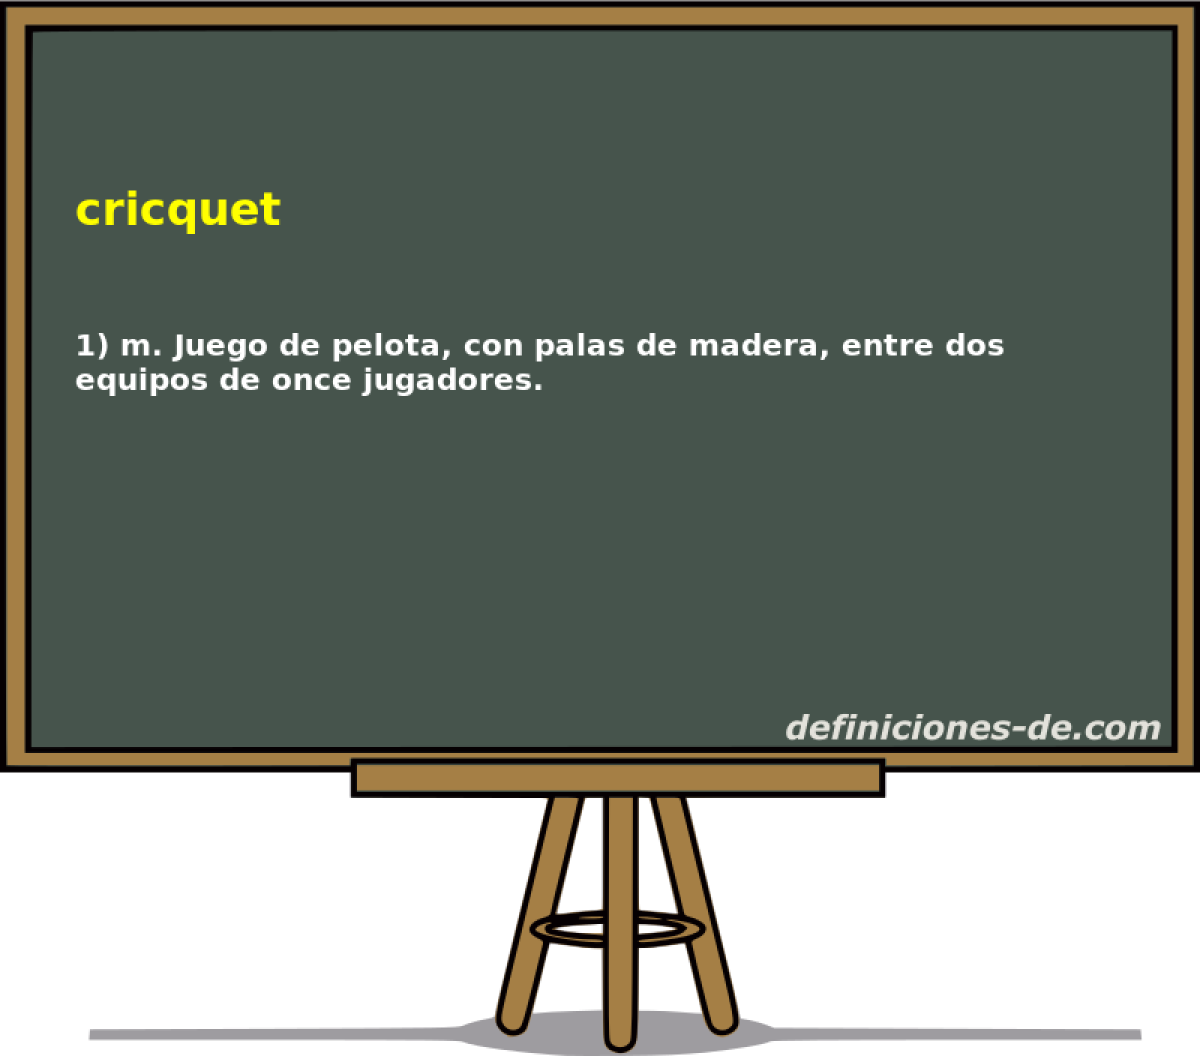 cricquet 